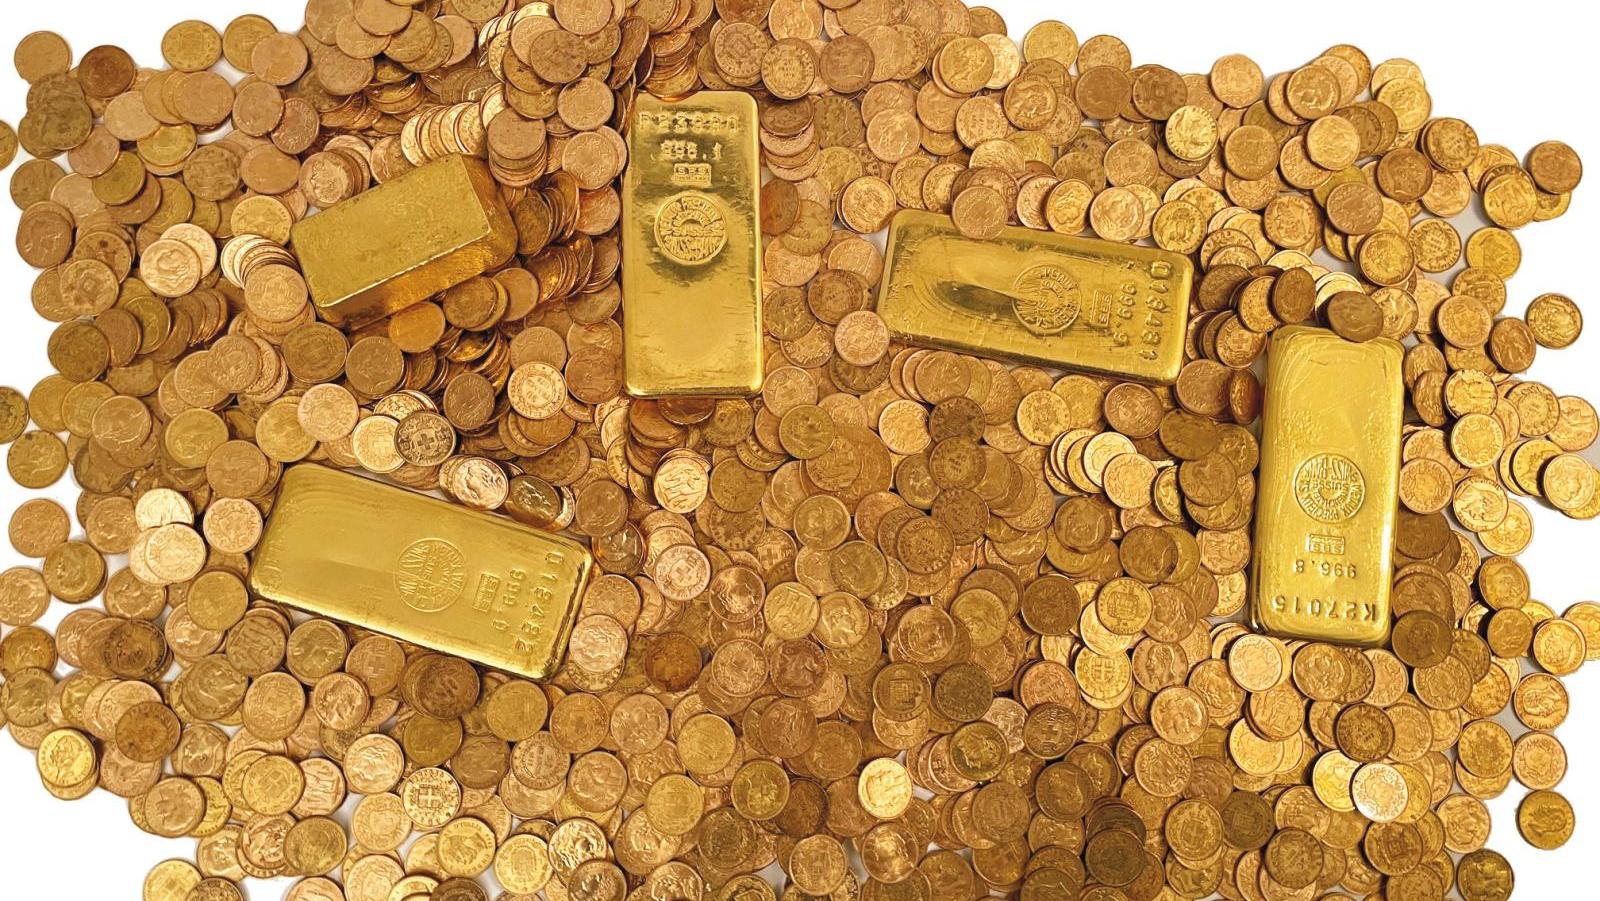 Trésor de Morez composé de cinq lingots et 1 559 pièces d’or, vendu en 153 lots.... Un trésor en or pour la ville de Morez